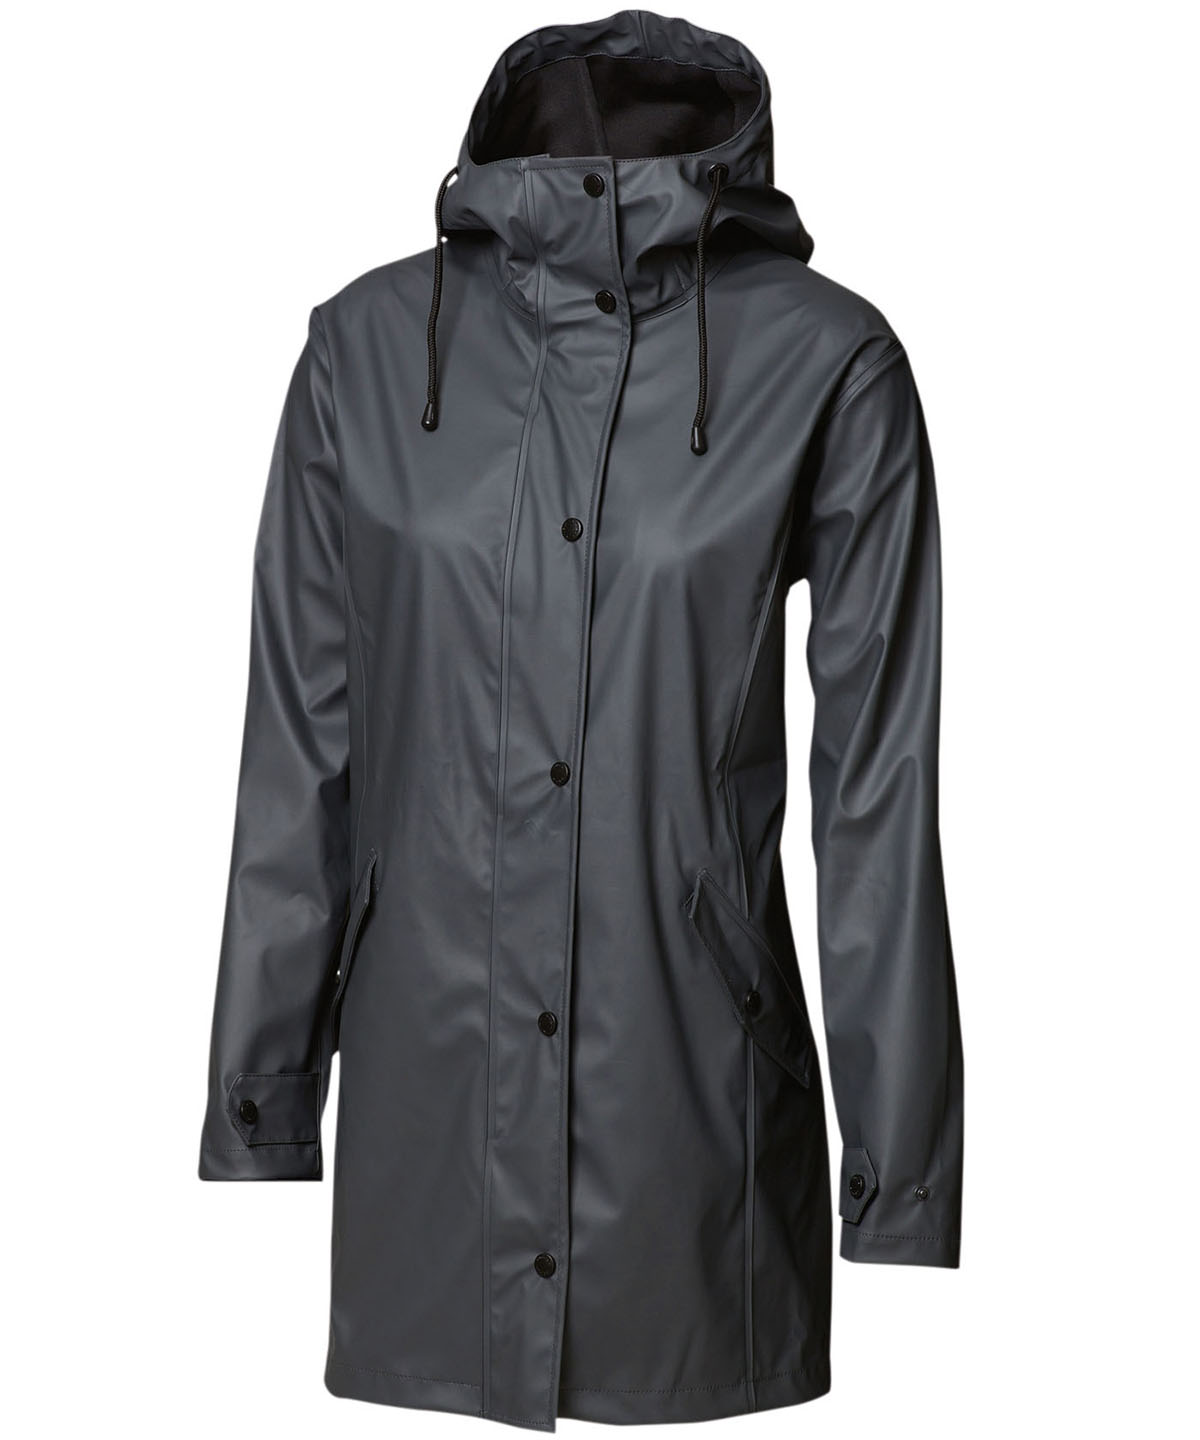 Women’s Huntington – fashionable raincoat